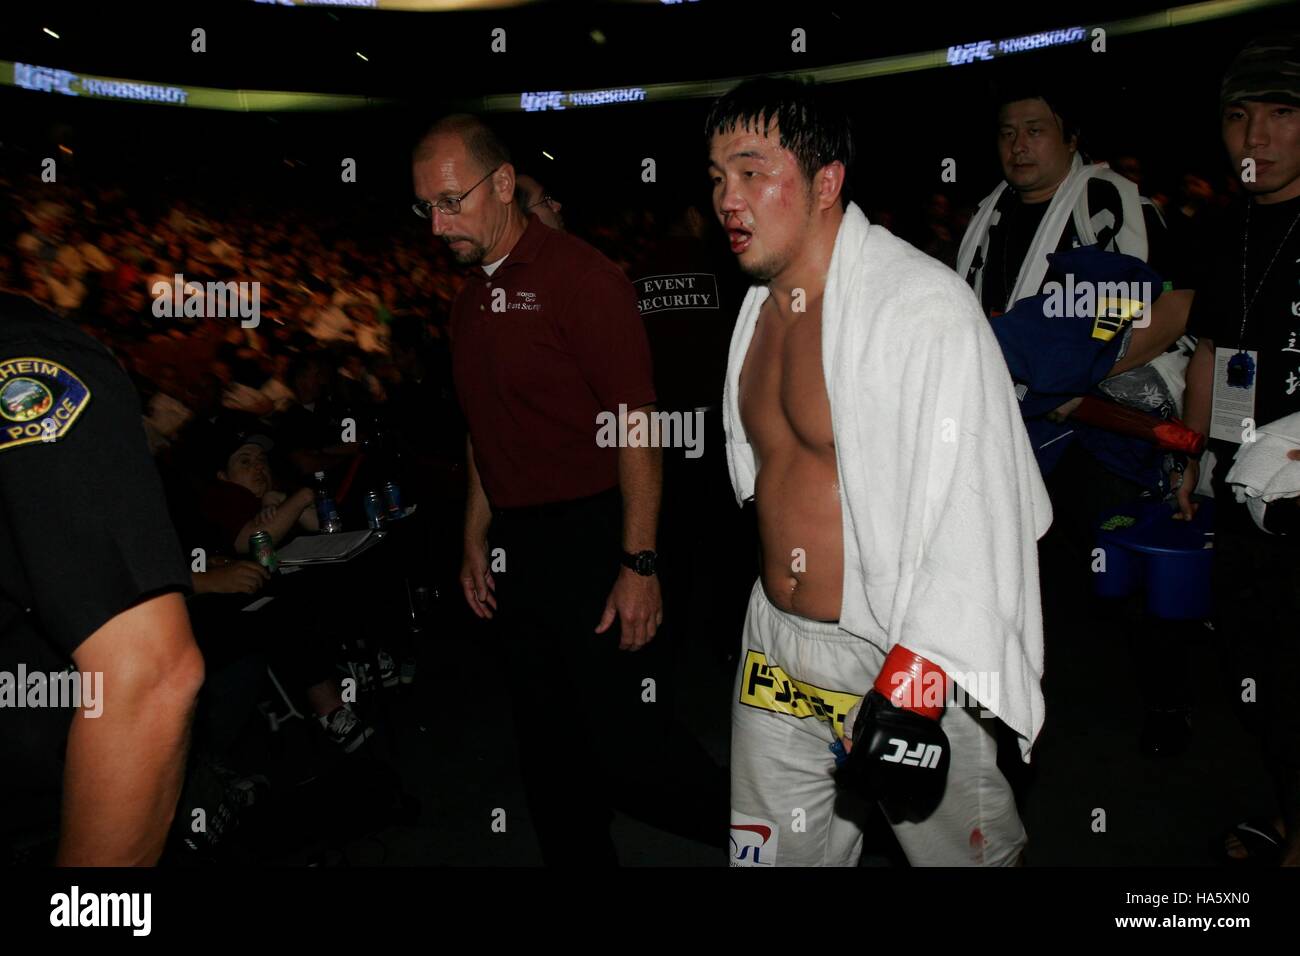 Kazuhiro Nakamura lascia l'anello dopo aver perso a Lyoto Machida a UFC 76 durante una di mixed martial arts corrispondono all'Honda Center di Anaheim, CA sabato 7 settembre 22, 2007. Photo credit: Francesco Specker Foto Stock